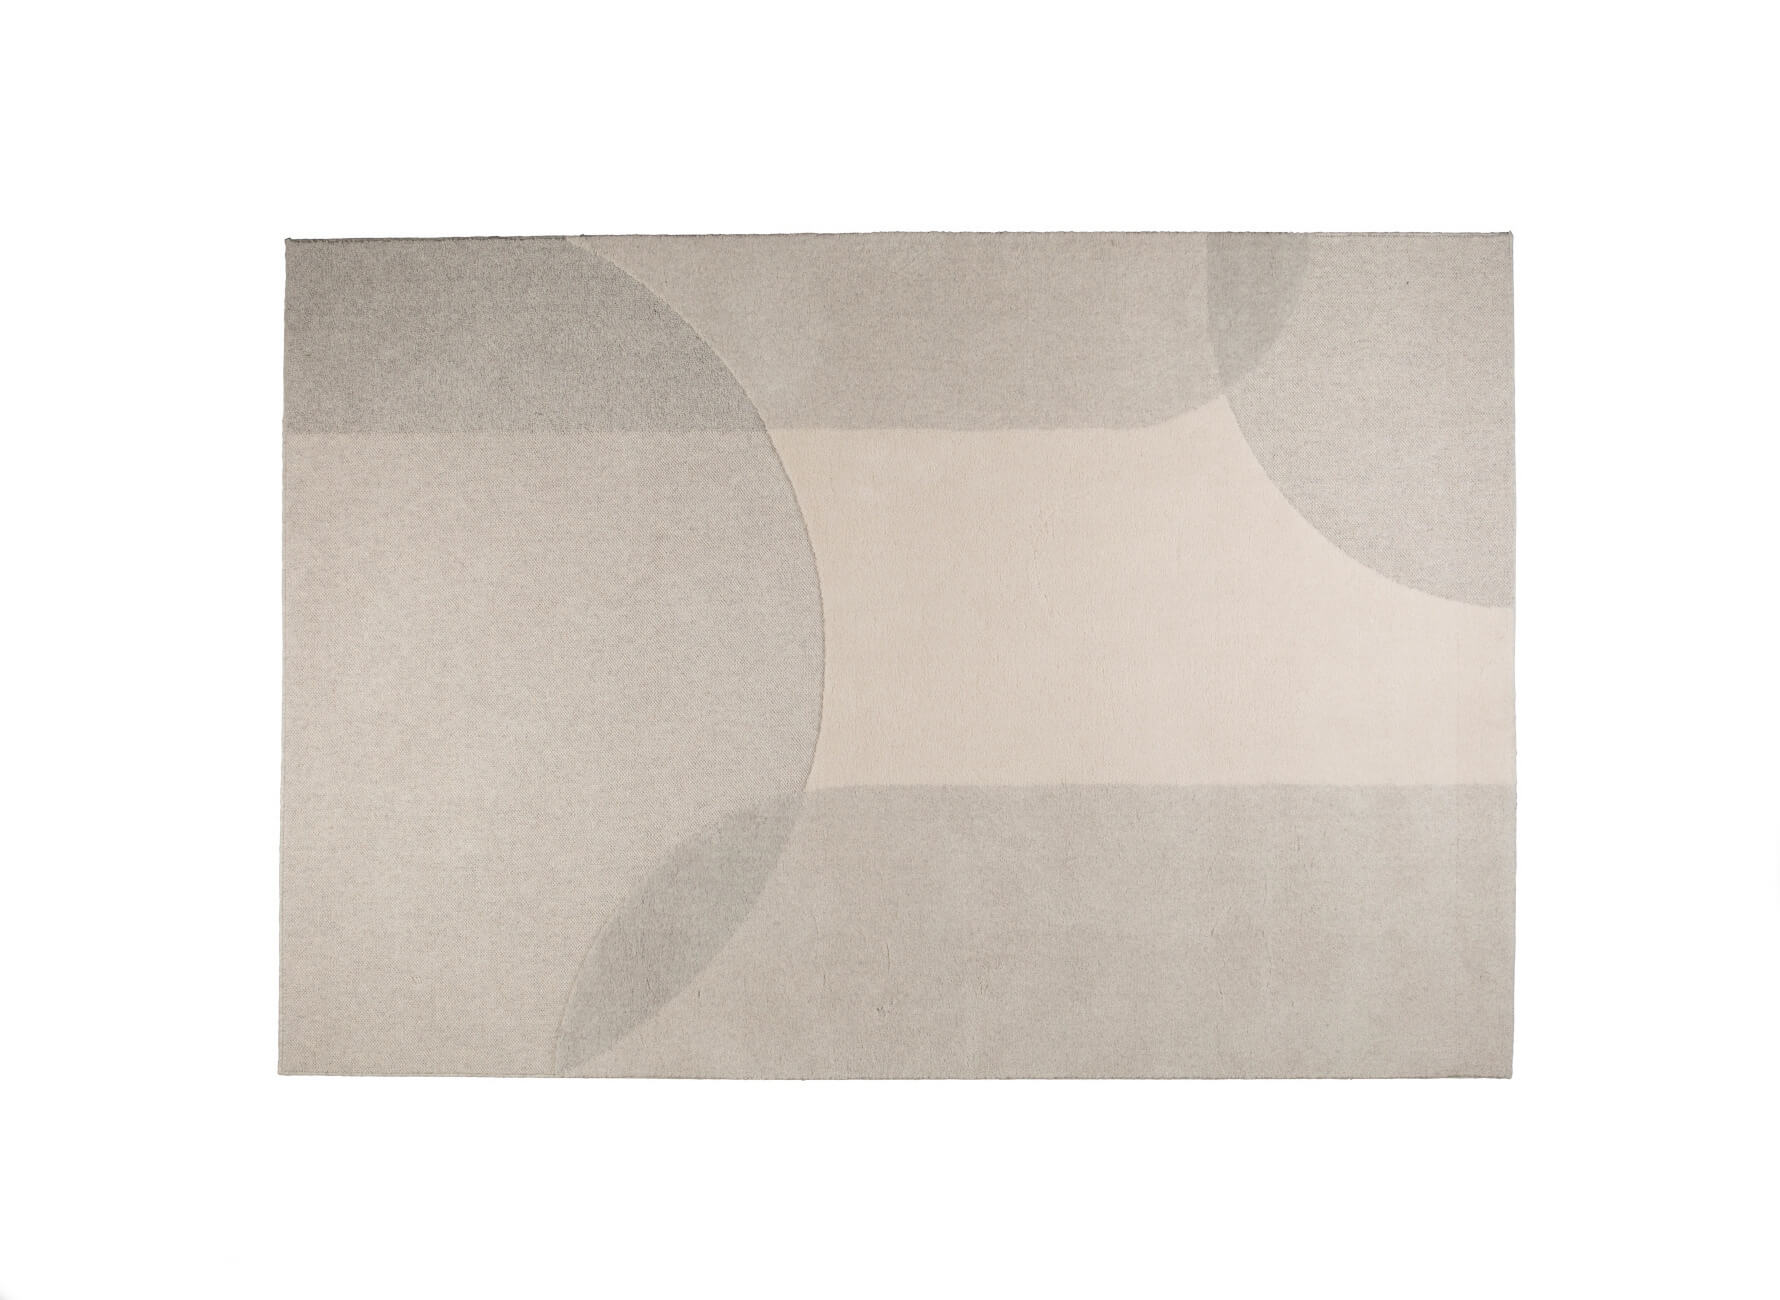 Dream Teppich, 160 x 230 cm, natur / pink